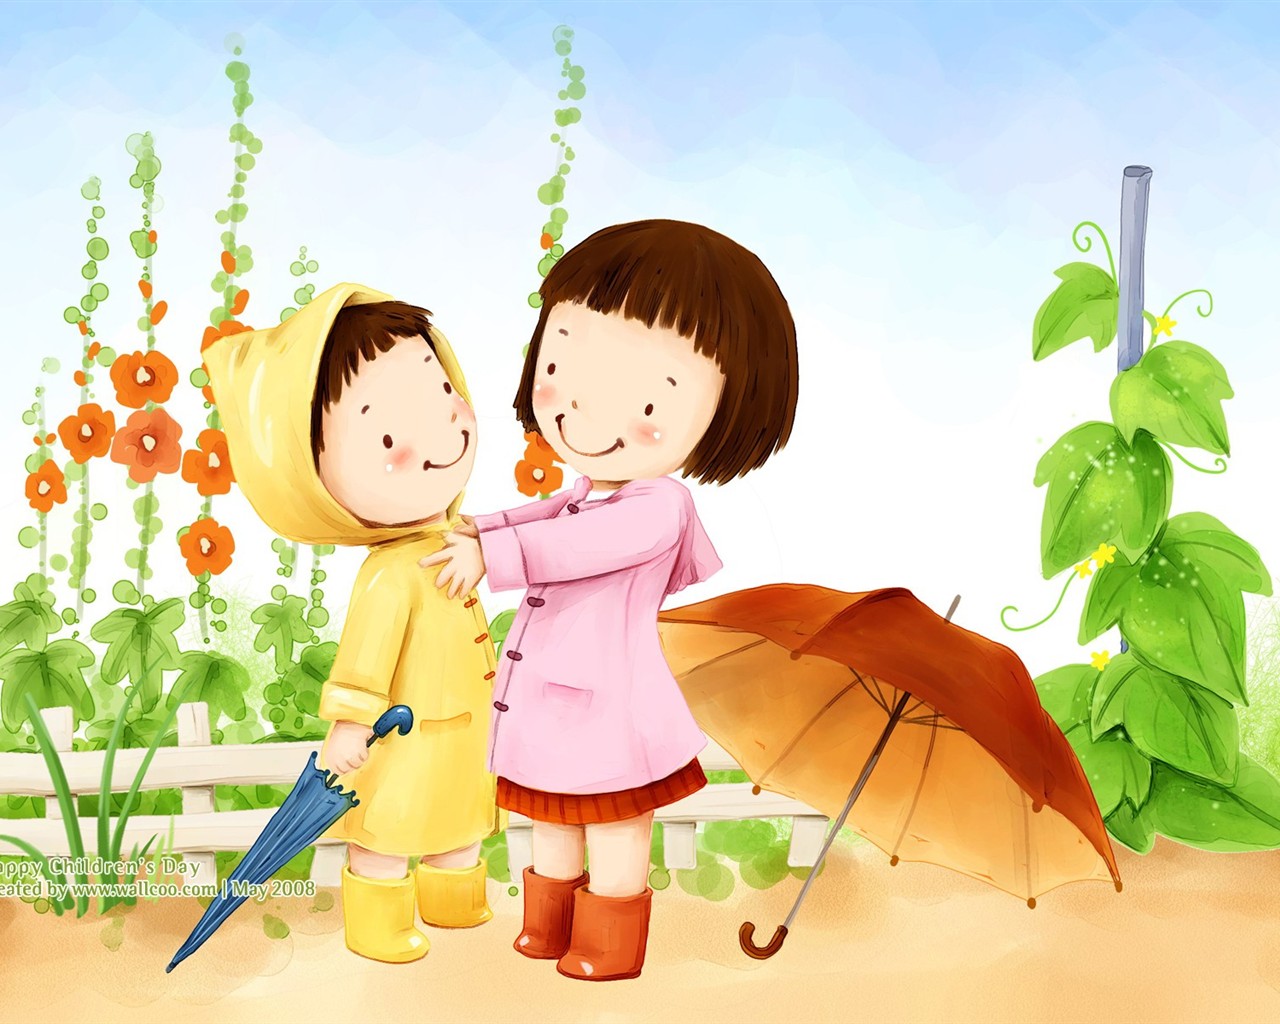 Lovely Children's Day Wallpaper Illustrator #30 - 1280x1024